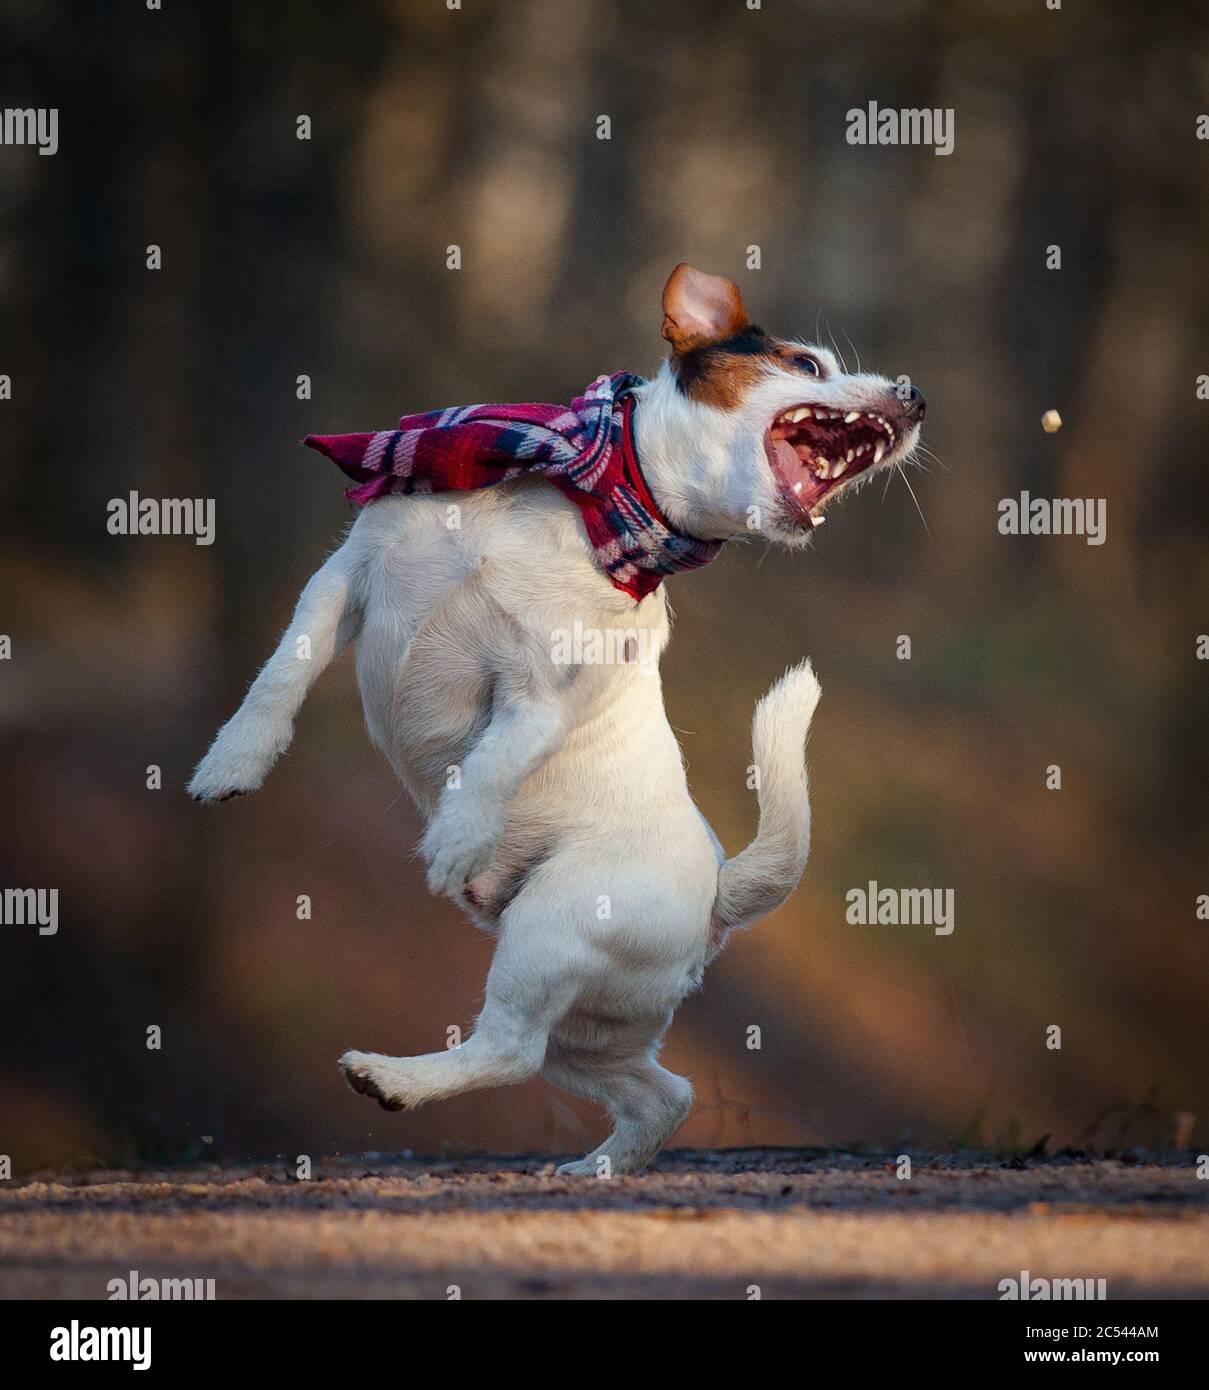 Nette lustige Hund Jack russel Terrier fangen ein Vergnügen, tanzen weraing einen Schal Stockfoto